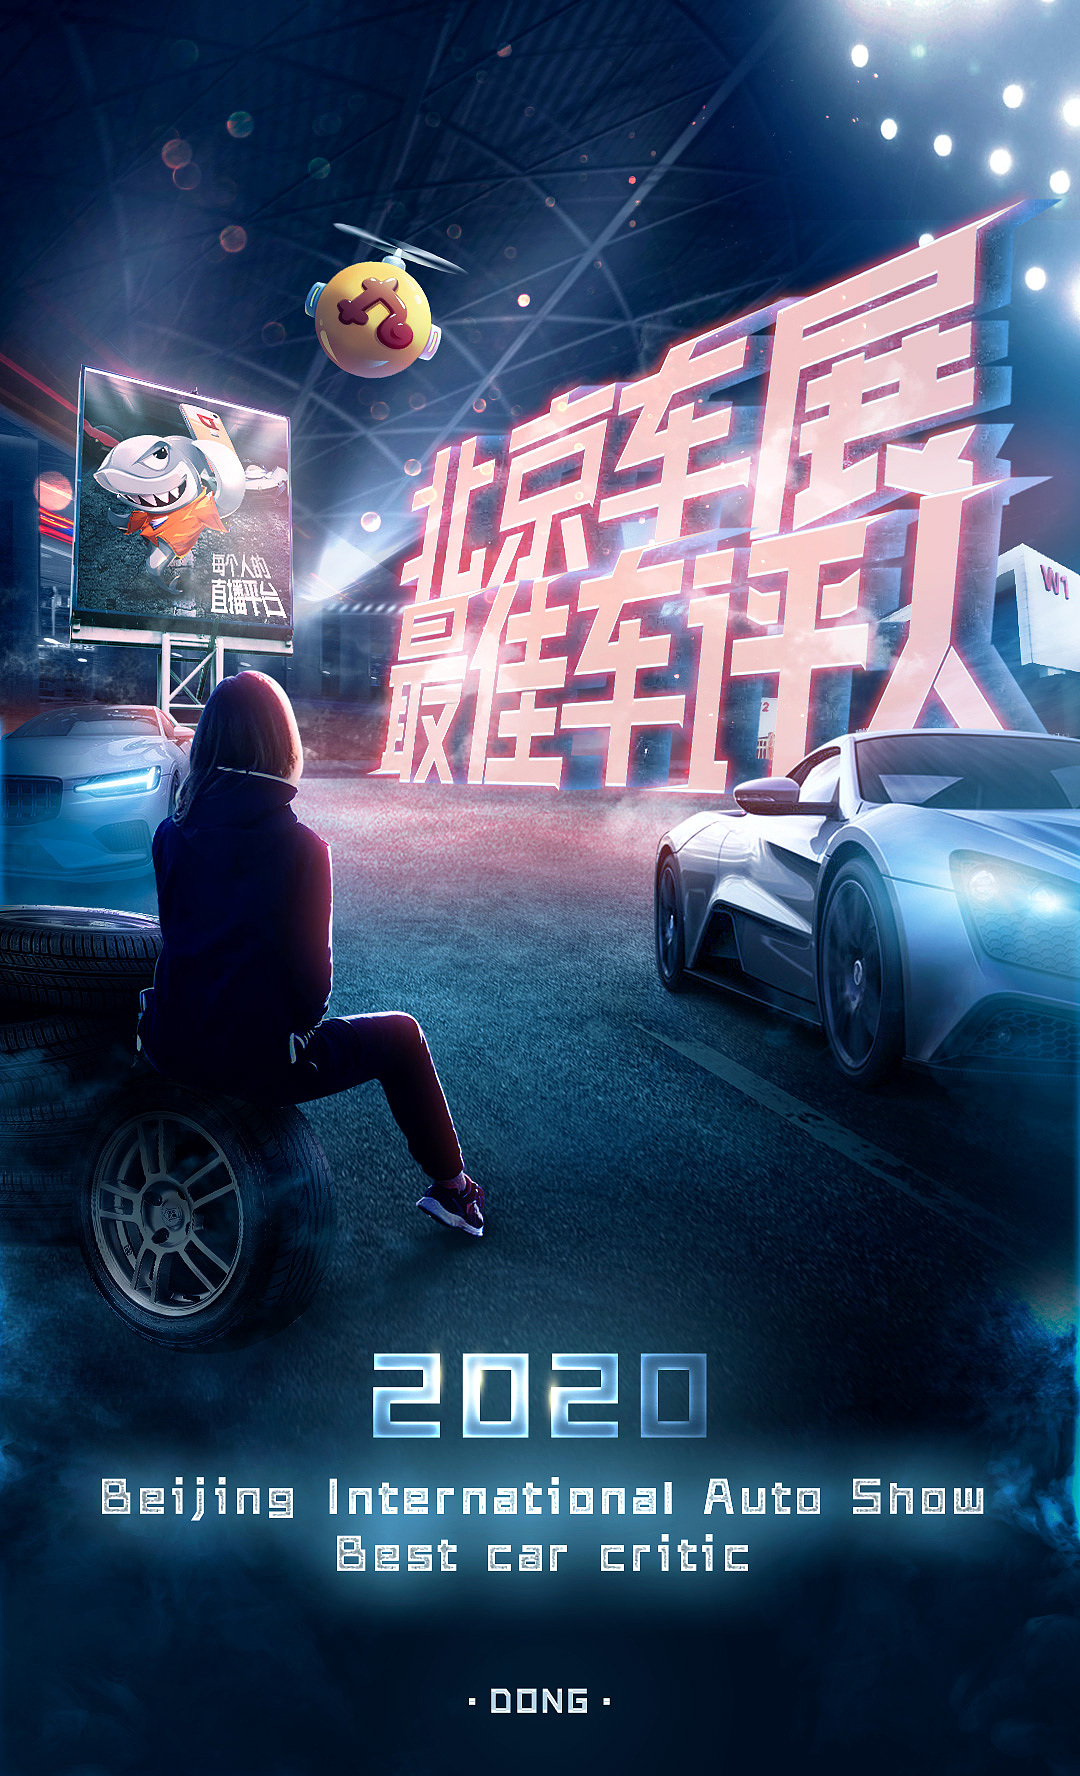 【2020北京车展】2020北京车展|图片|视频 - 新浪汽车